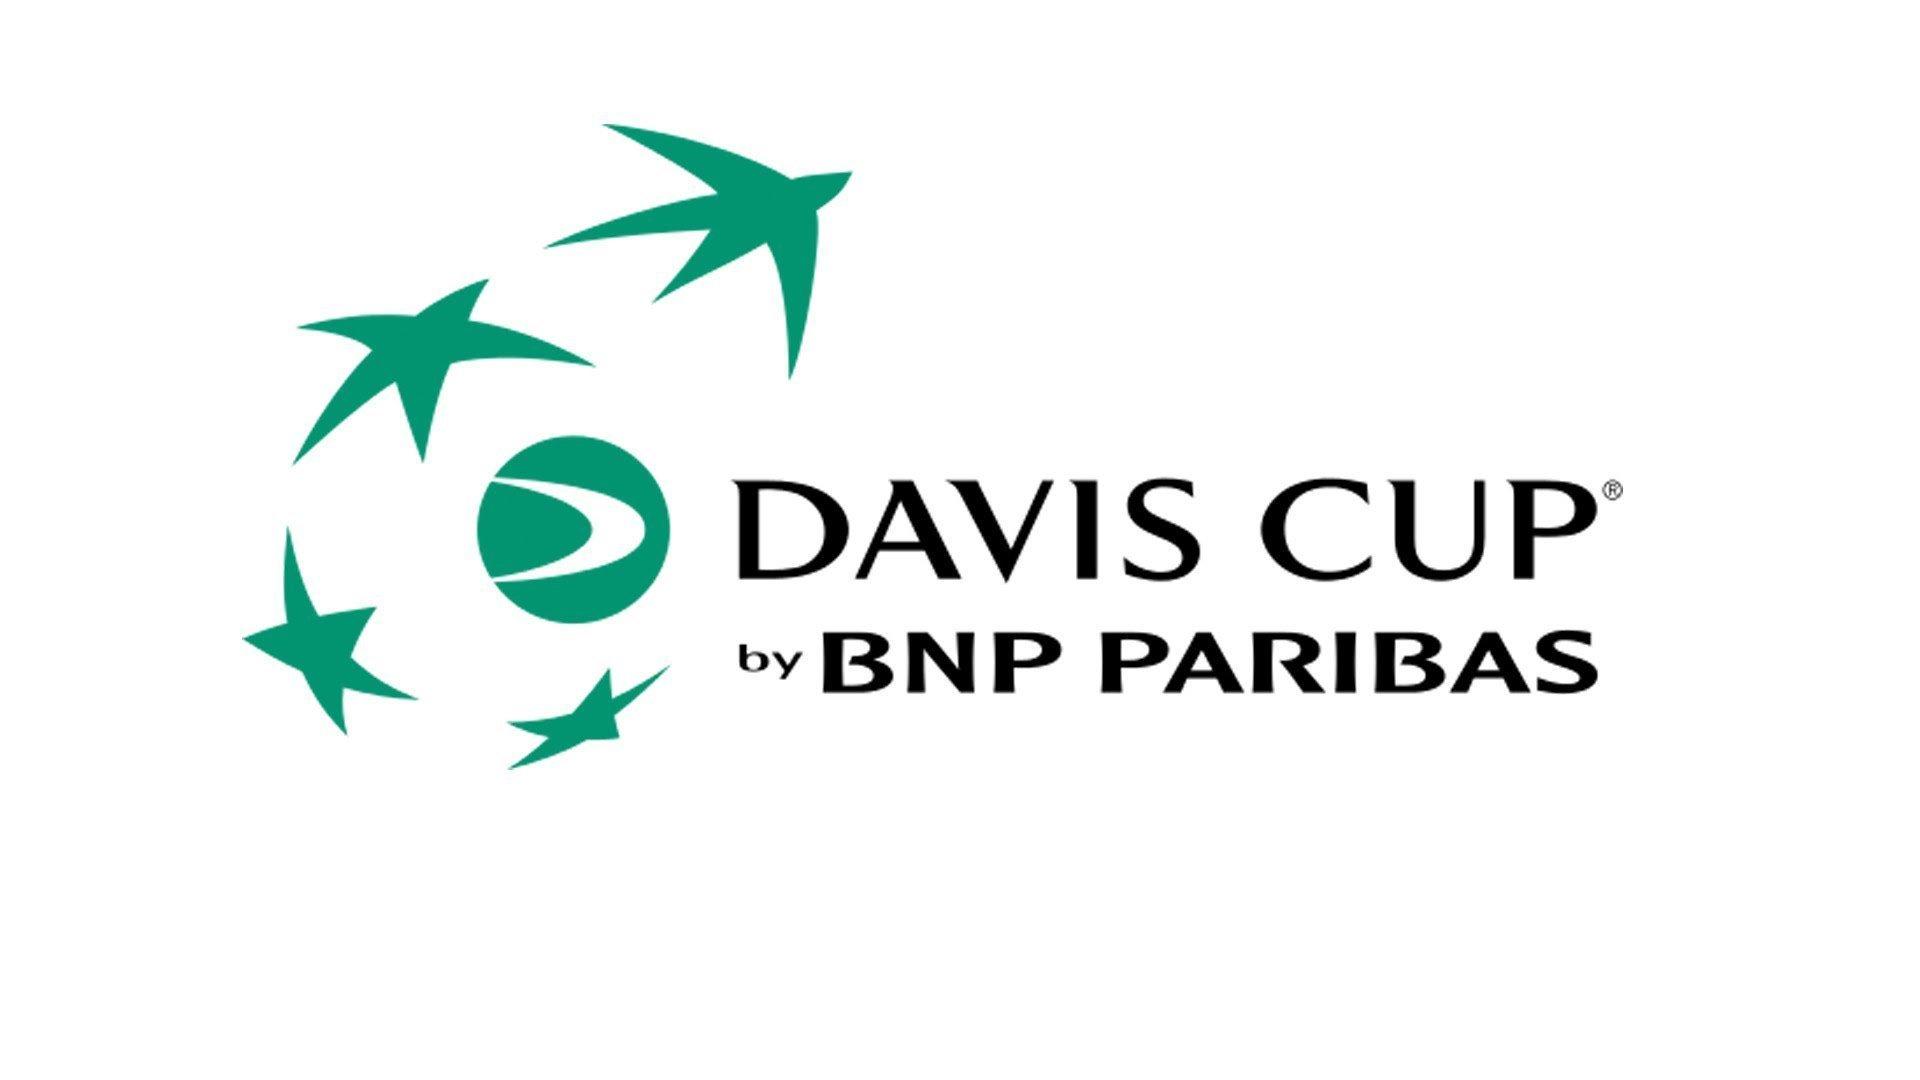 Gerard Pique, îngrijorat în ceea ce priveşte organizarea fazei finale a Cupei Davis